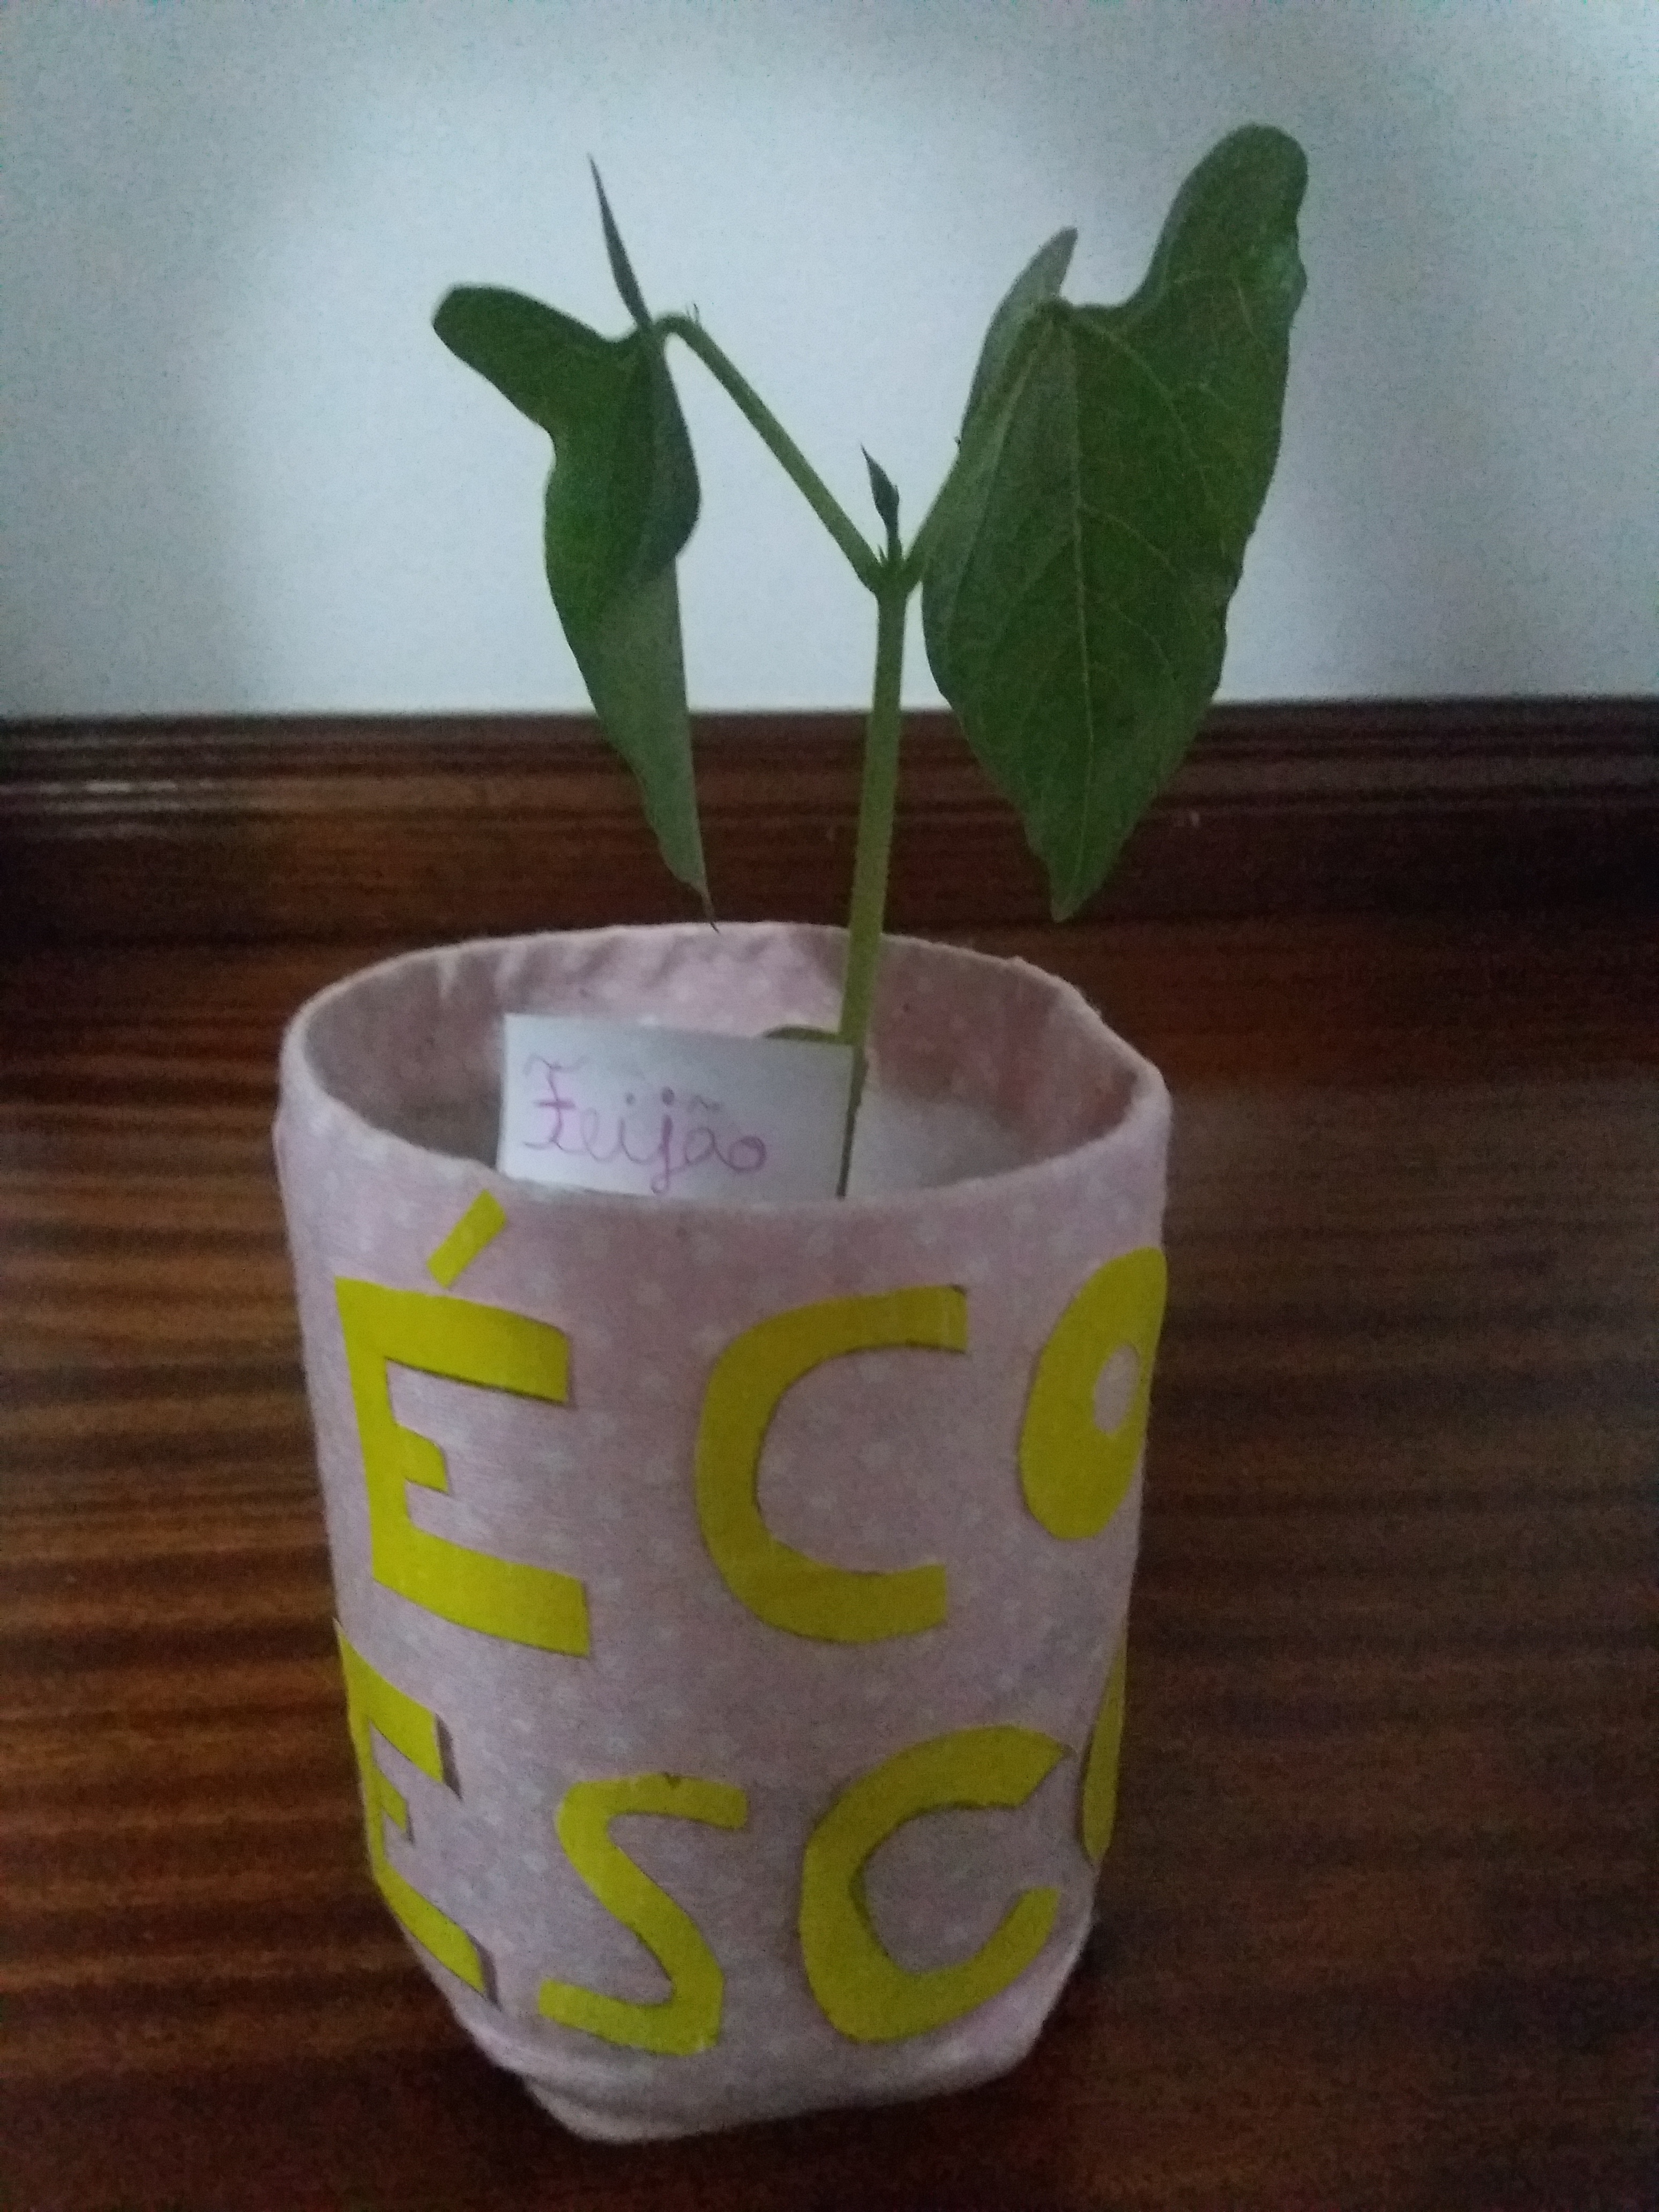 Feijão (plantinha) em desenvolvimento - 2 folhas (decoração do vaso/recipiente e identificação da plantinha).